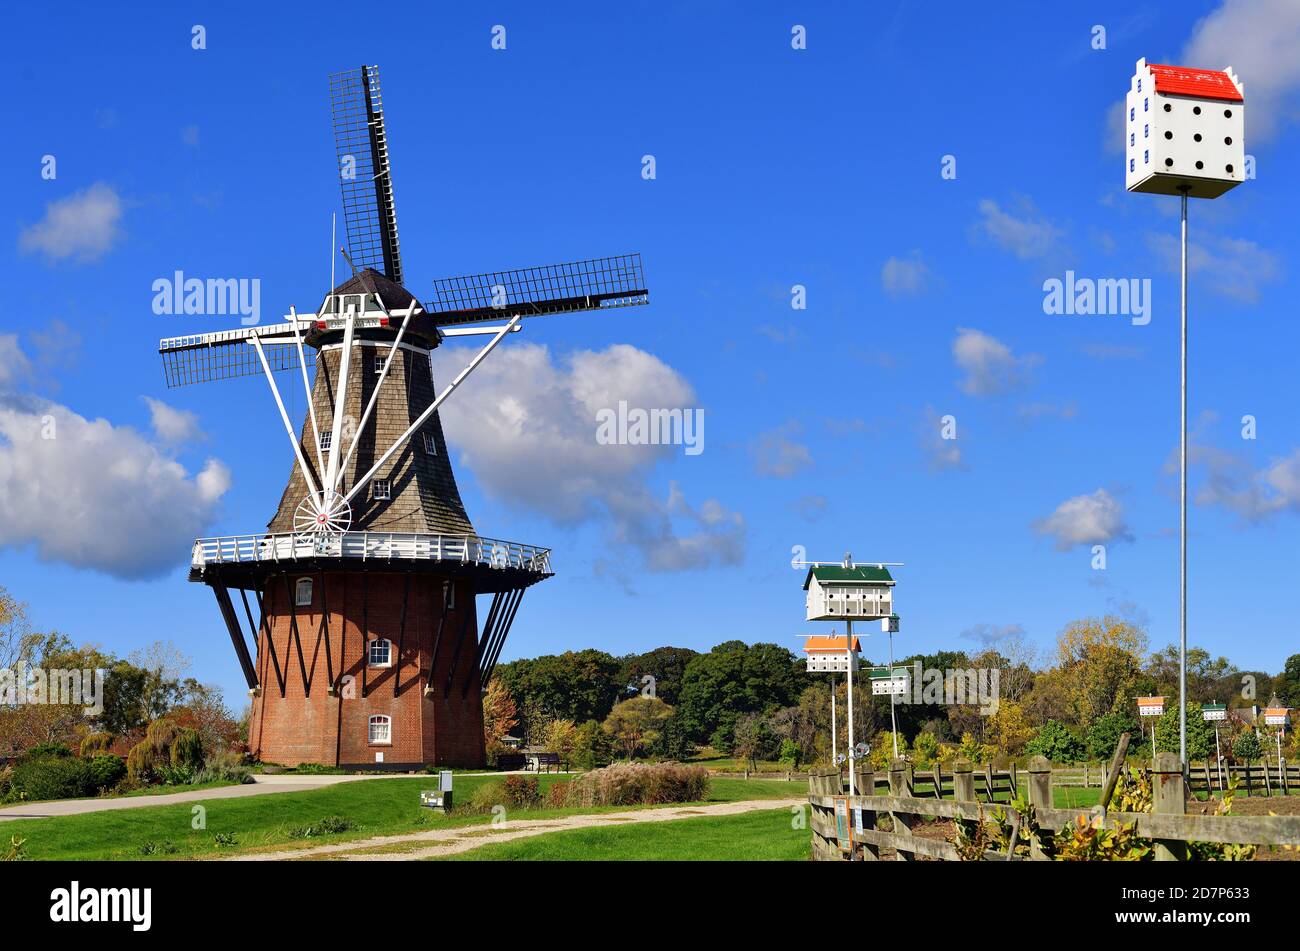 Pays-Bas, Michigan, États-Unis. Le moulin à vent DeZwaan (le cygne en néerlandais) aux jardins de Windmill Island, en Hollande, au Michigan. Banque D'Images